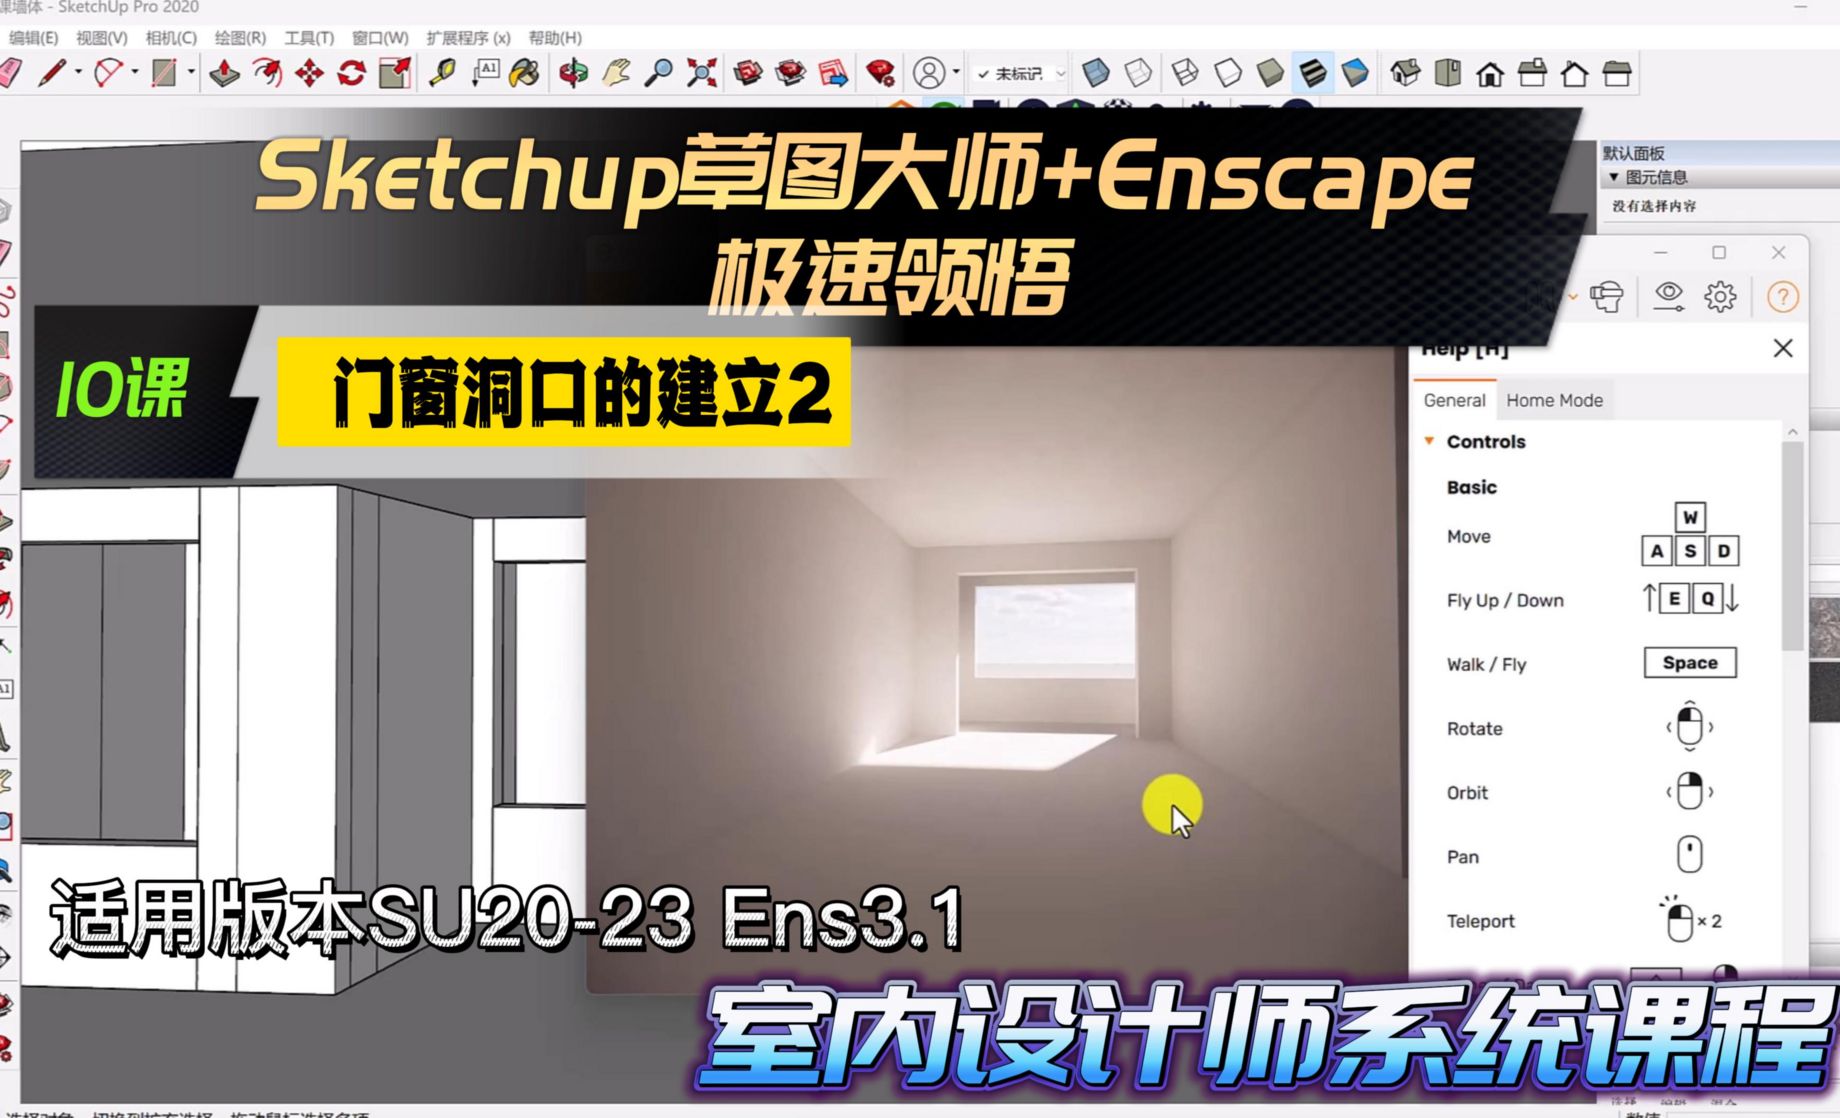 Sketchup+Enscape室内设计极速领悟-门窗洞口的建立2